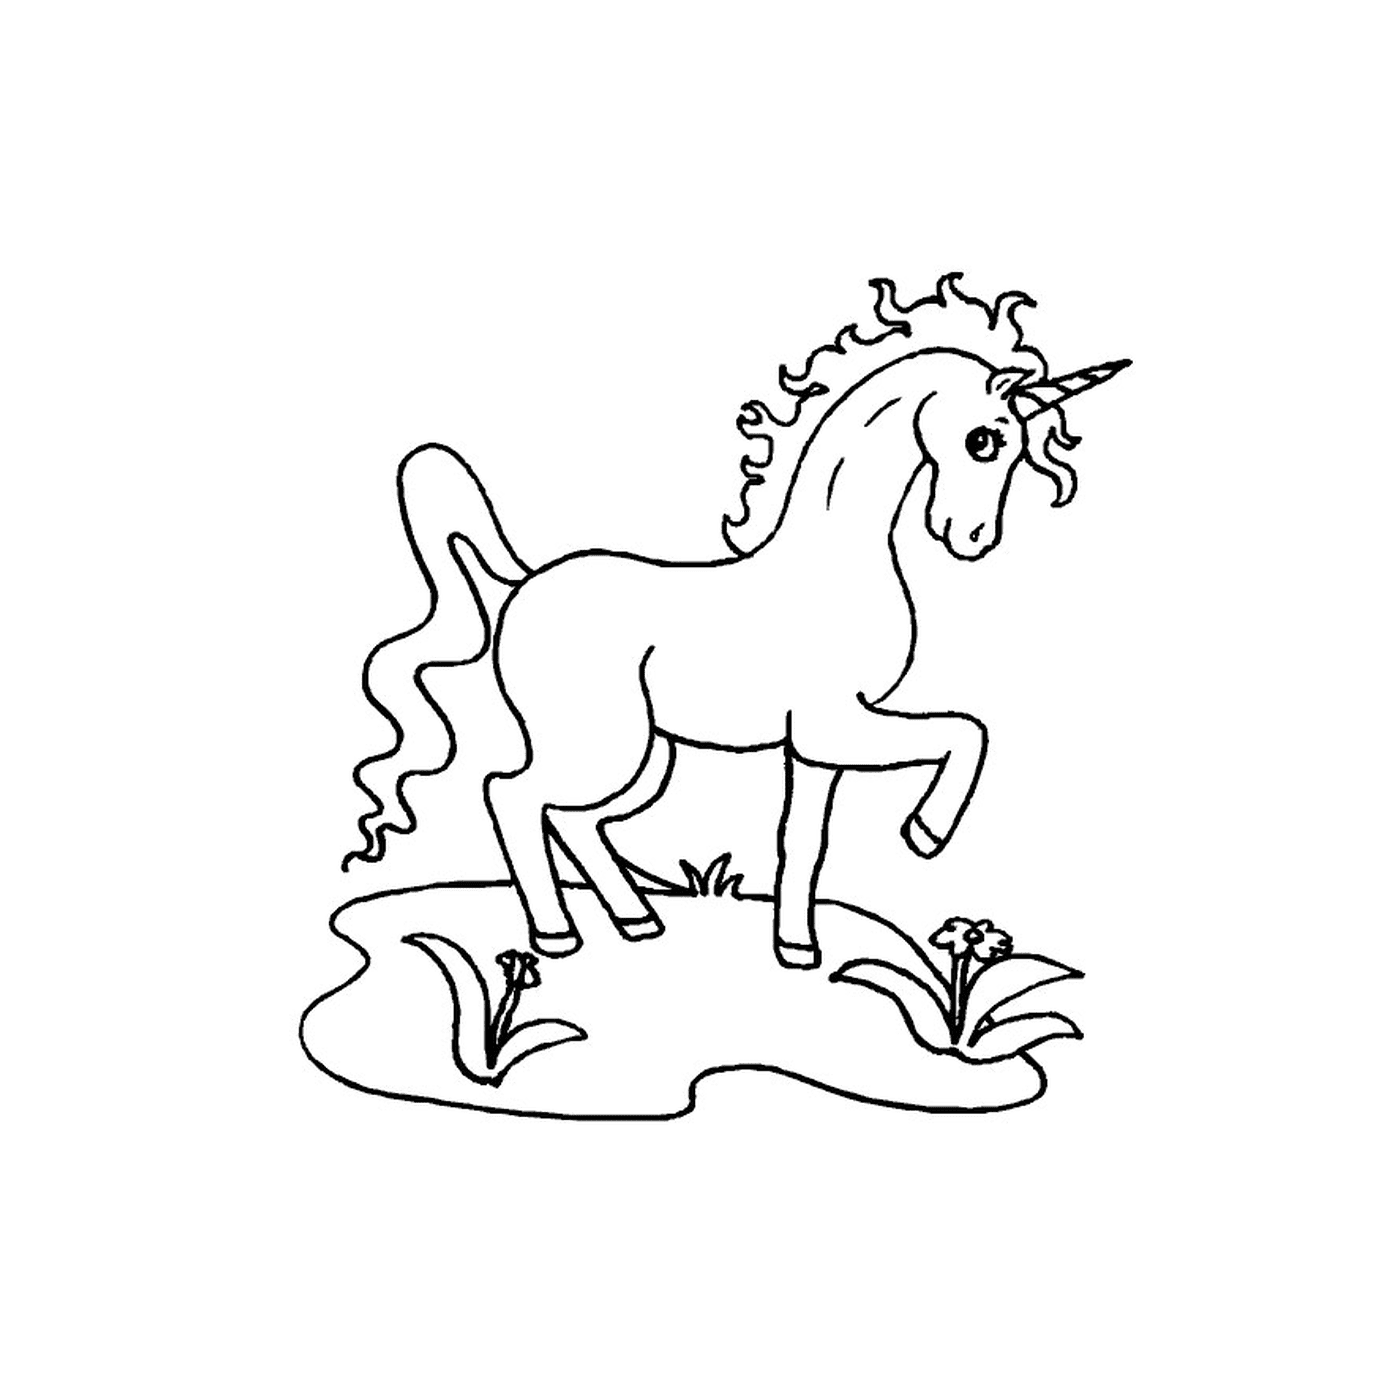  Majestuoso unicornio de pie en la hierba 